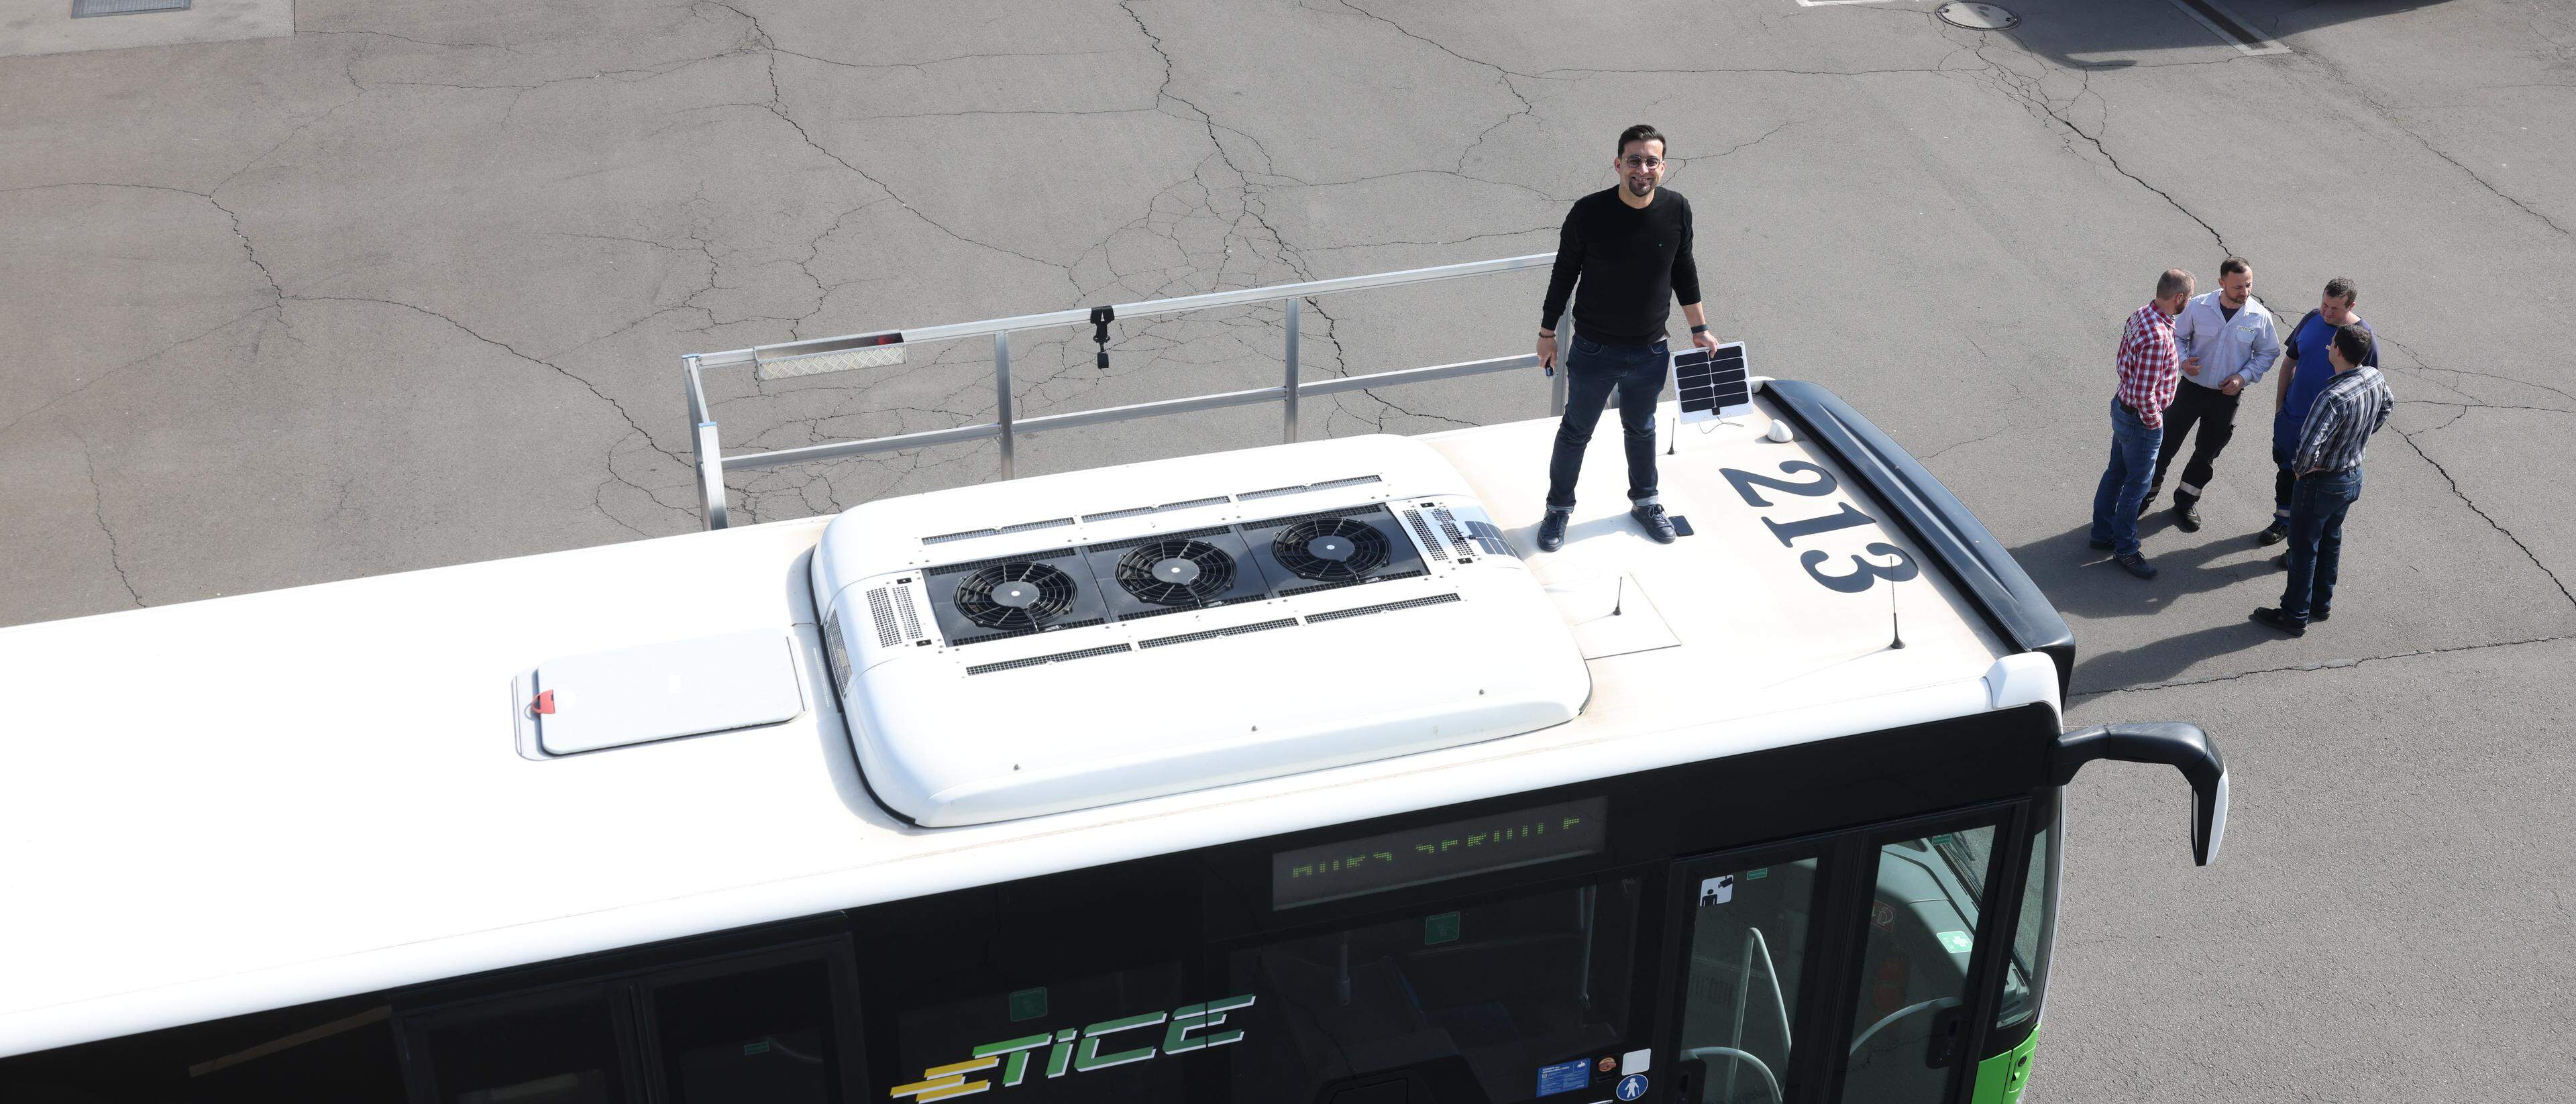 O engenheiro físico português analisa os sensores que instalou há umas semanas nos tejadilhos dos autocarros do TICE.